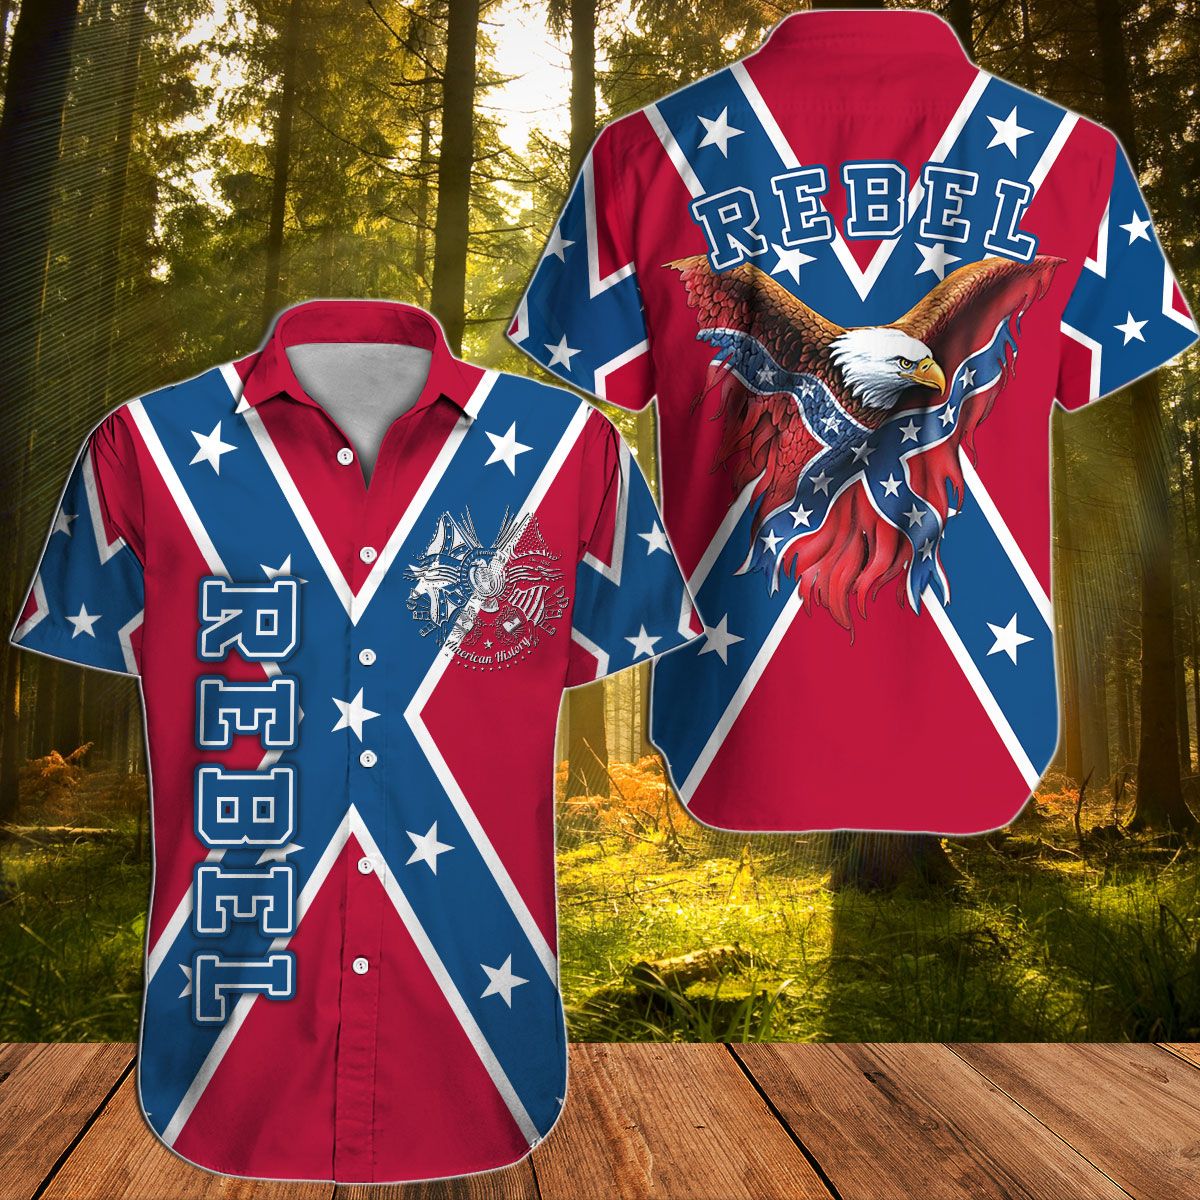 Southern Rebel Confederate Eagle Hawaiian shirt